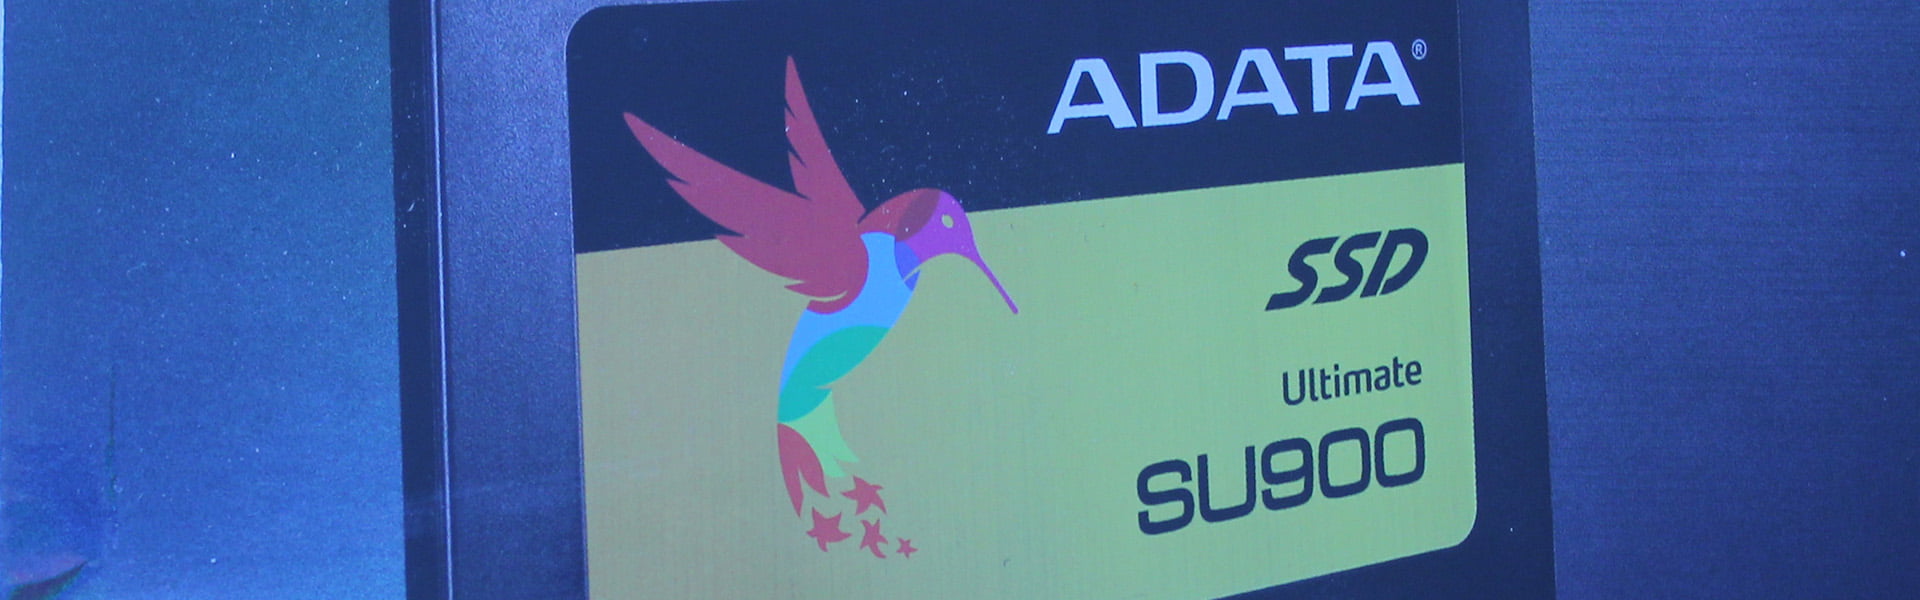 ADATA SU900 256GB Ultimate SSD Review 14